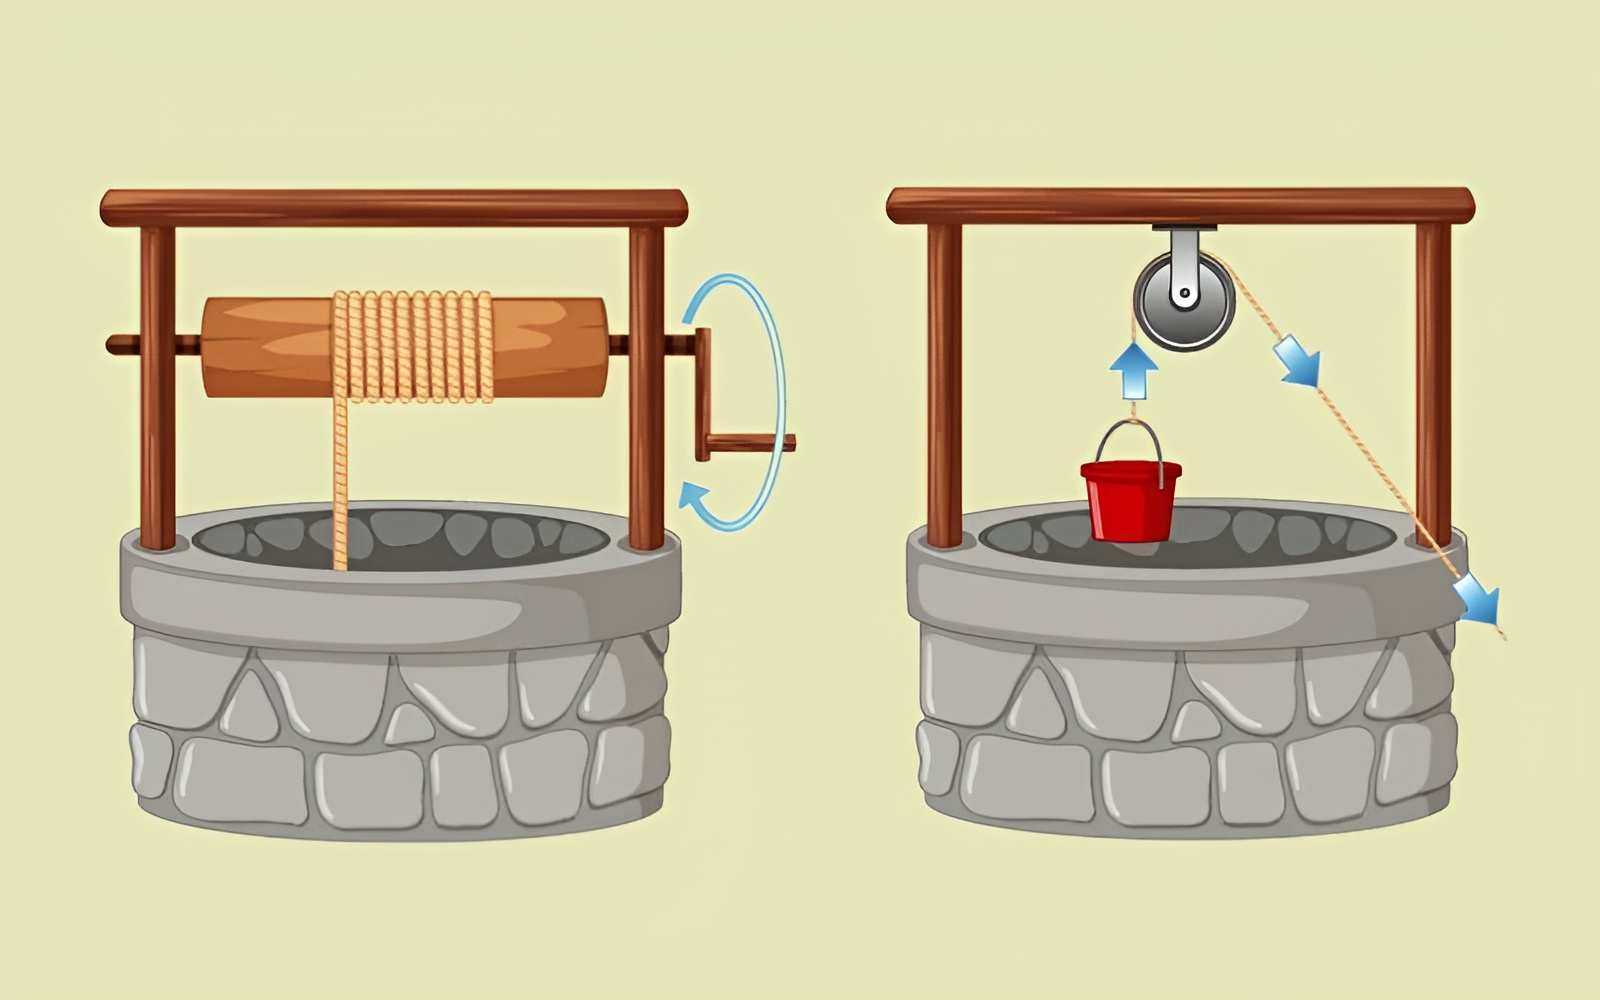 Ứng dụng của ròng rọc kéo nước từ giếng lên